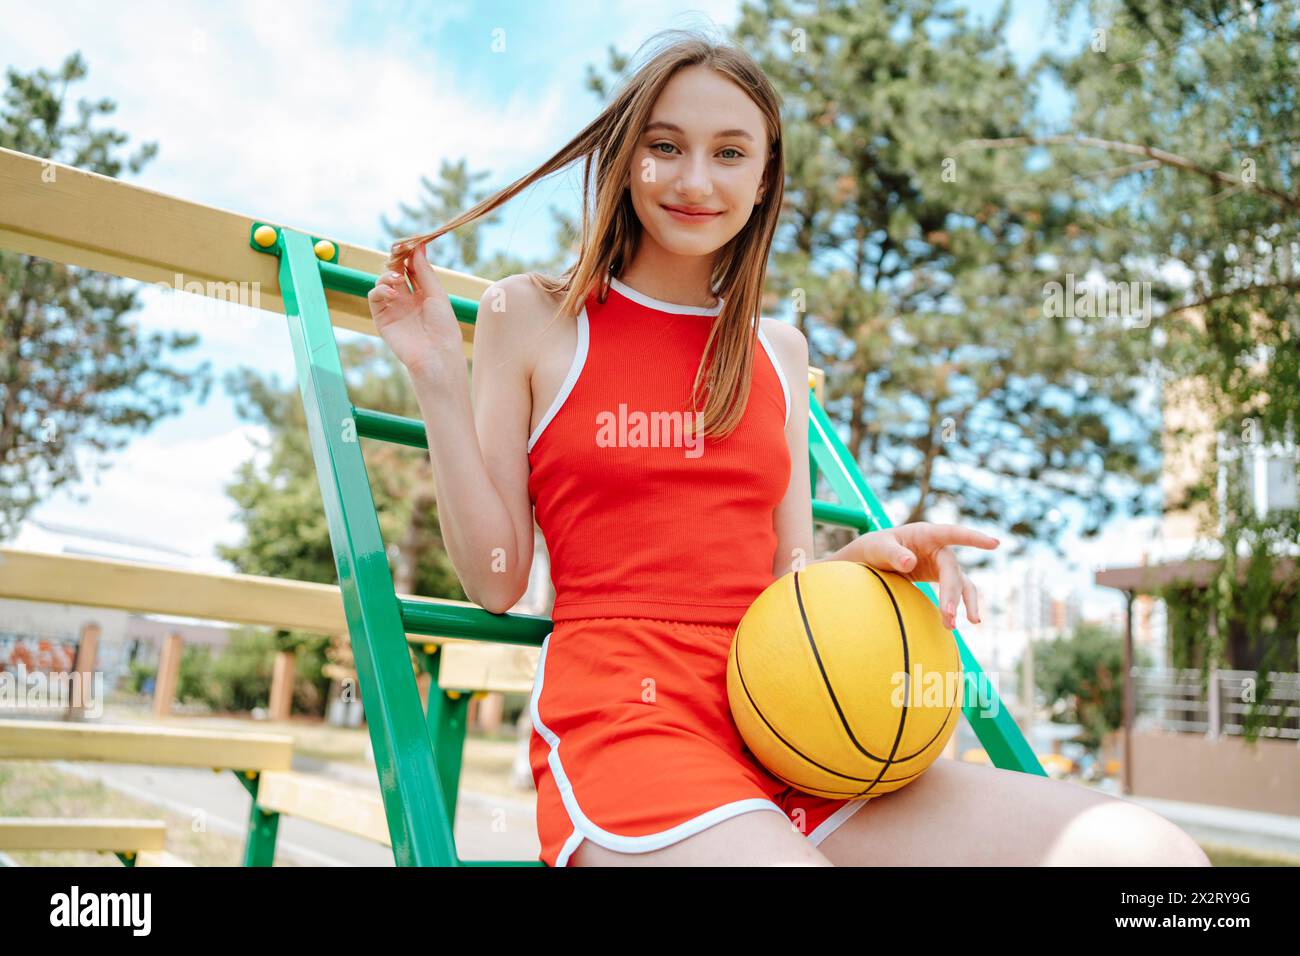 Joueur de basket-ball souriant assis avec la balle sur les marches dans le terrain de jeu Banque D'Images